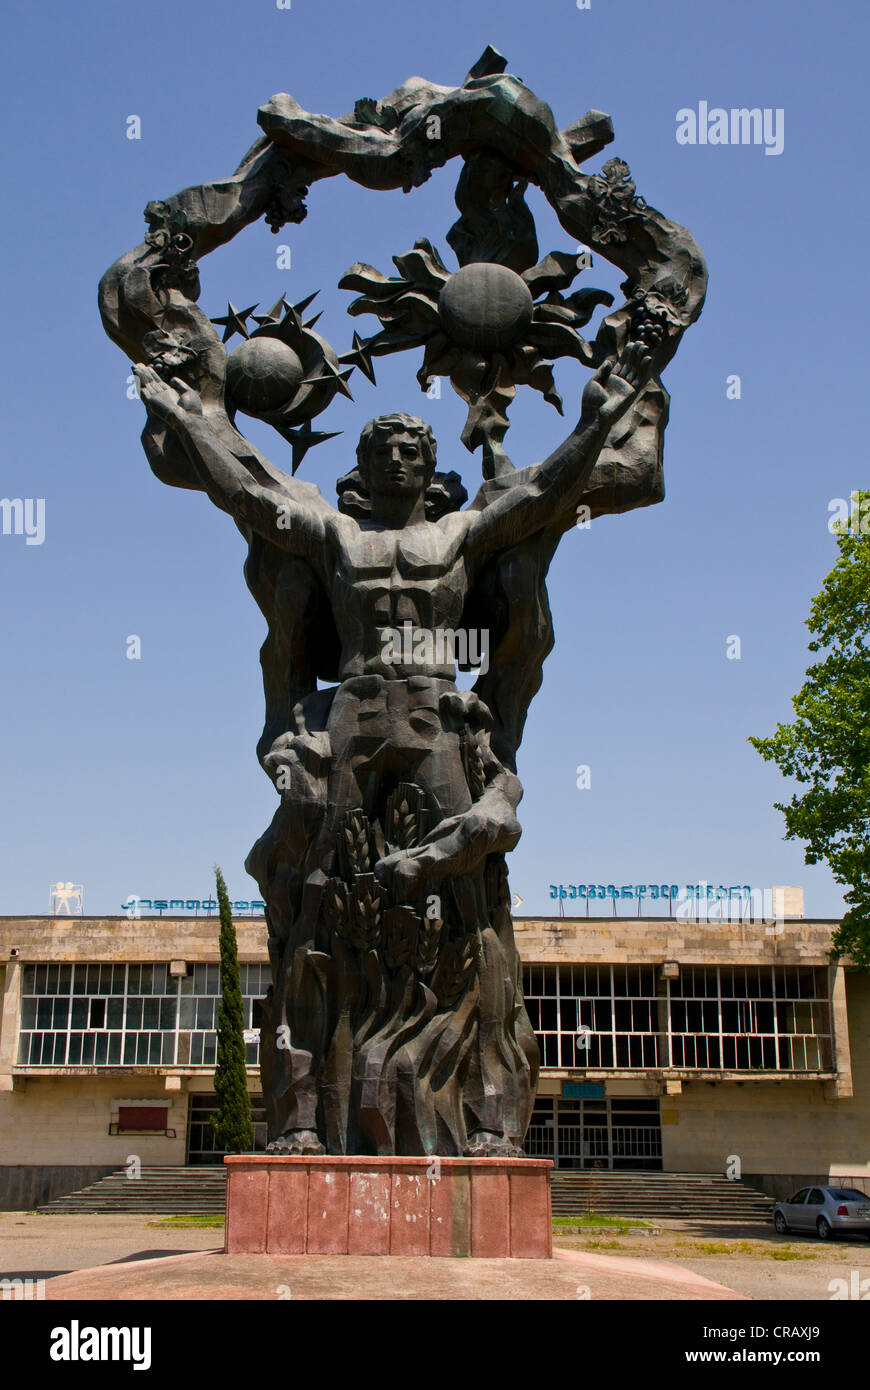 Heroische Statue eines Mannes aus der Sowjetzeit, Kutaissi, Georgien, Nahost Stockfoto